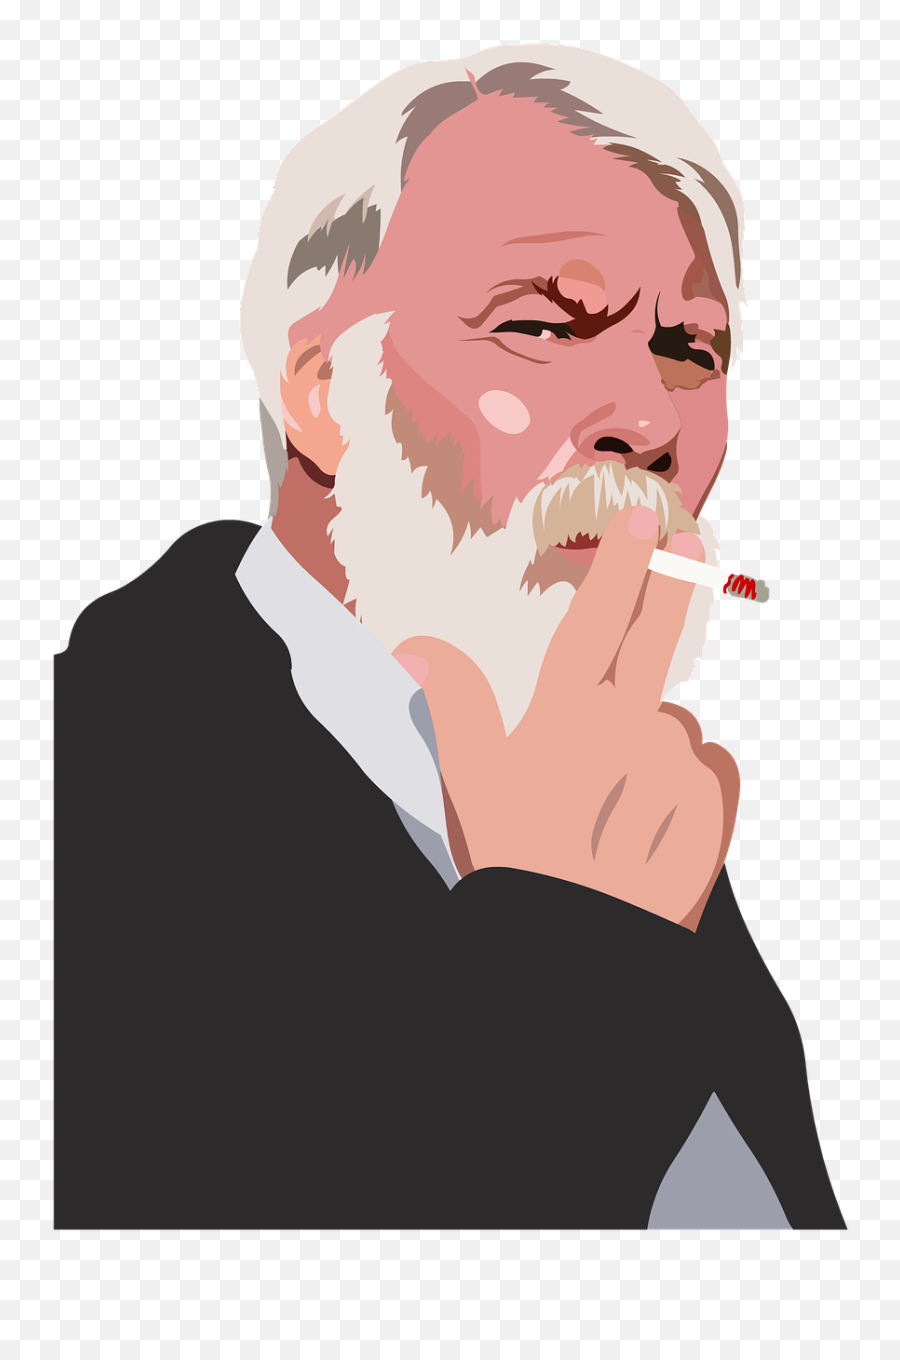 Old Man Smoke Old Man Senior - Man Smoking Transparent Background Emoji,Steam Coming Out Of Nose Emoji